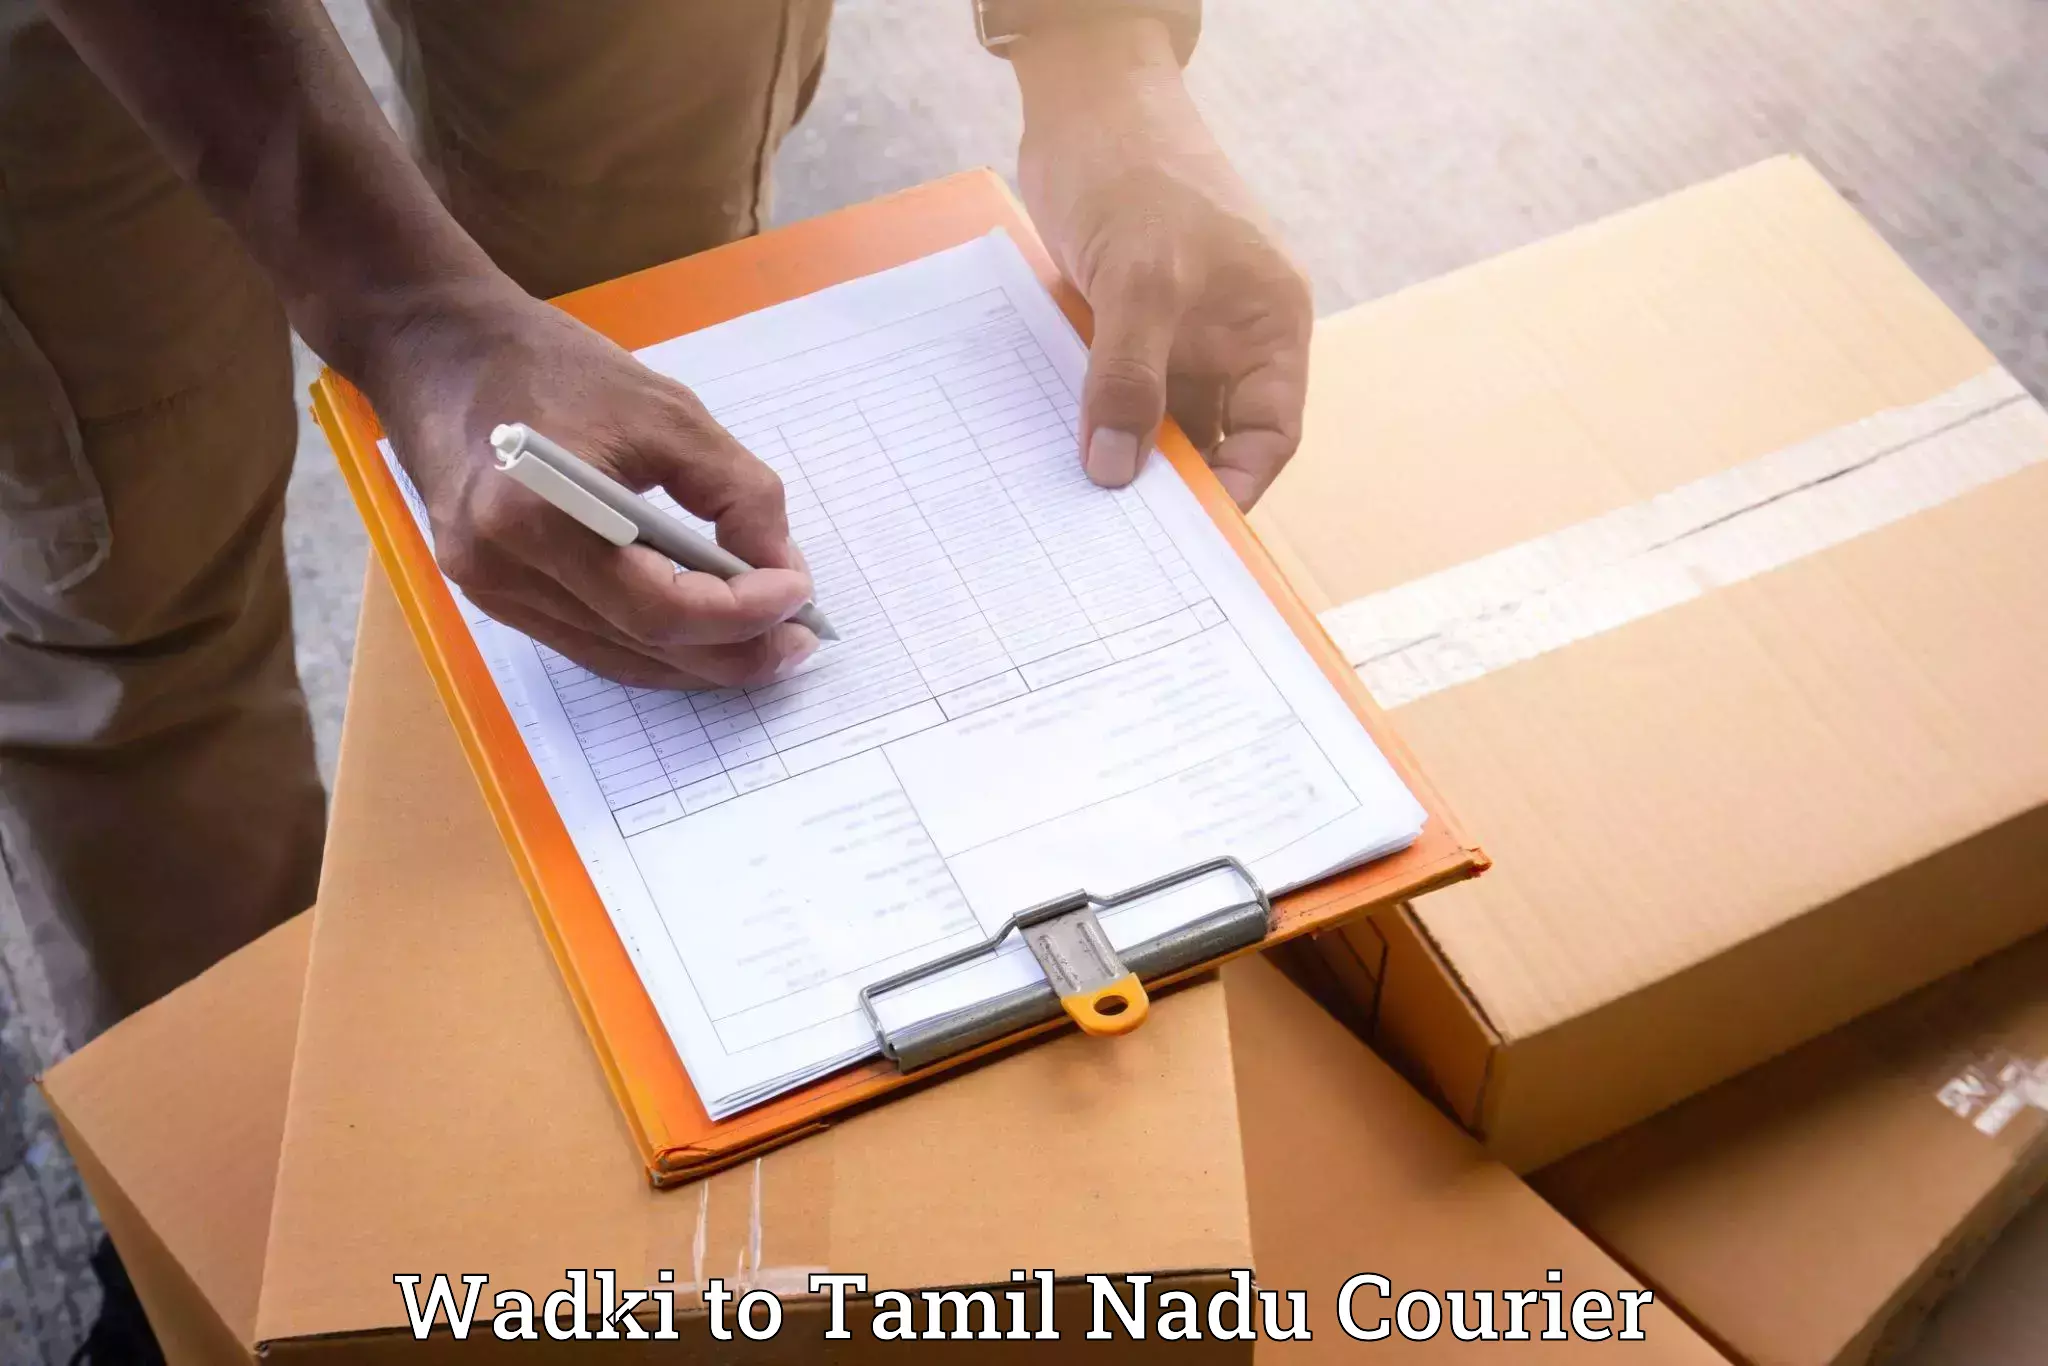 Moving and handling services Wadki to Tiruturaipundi